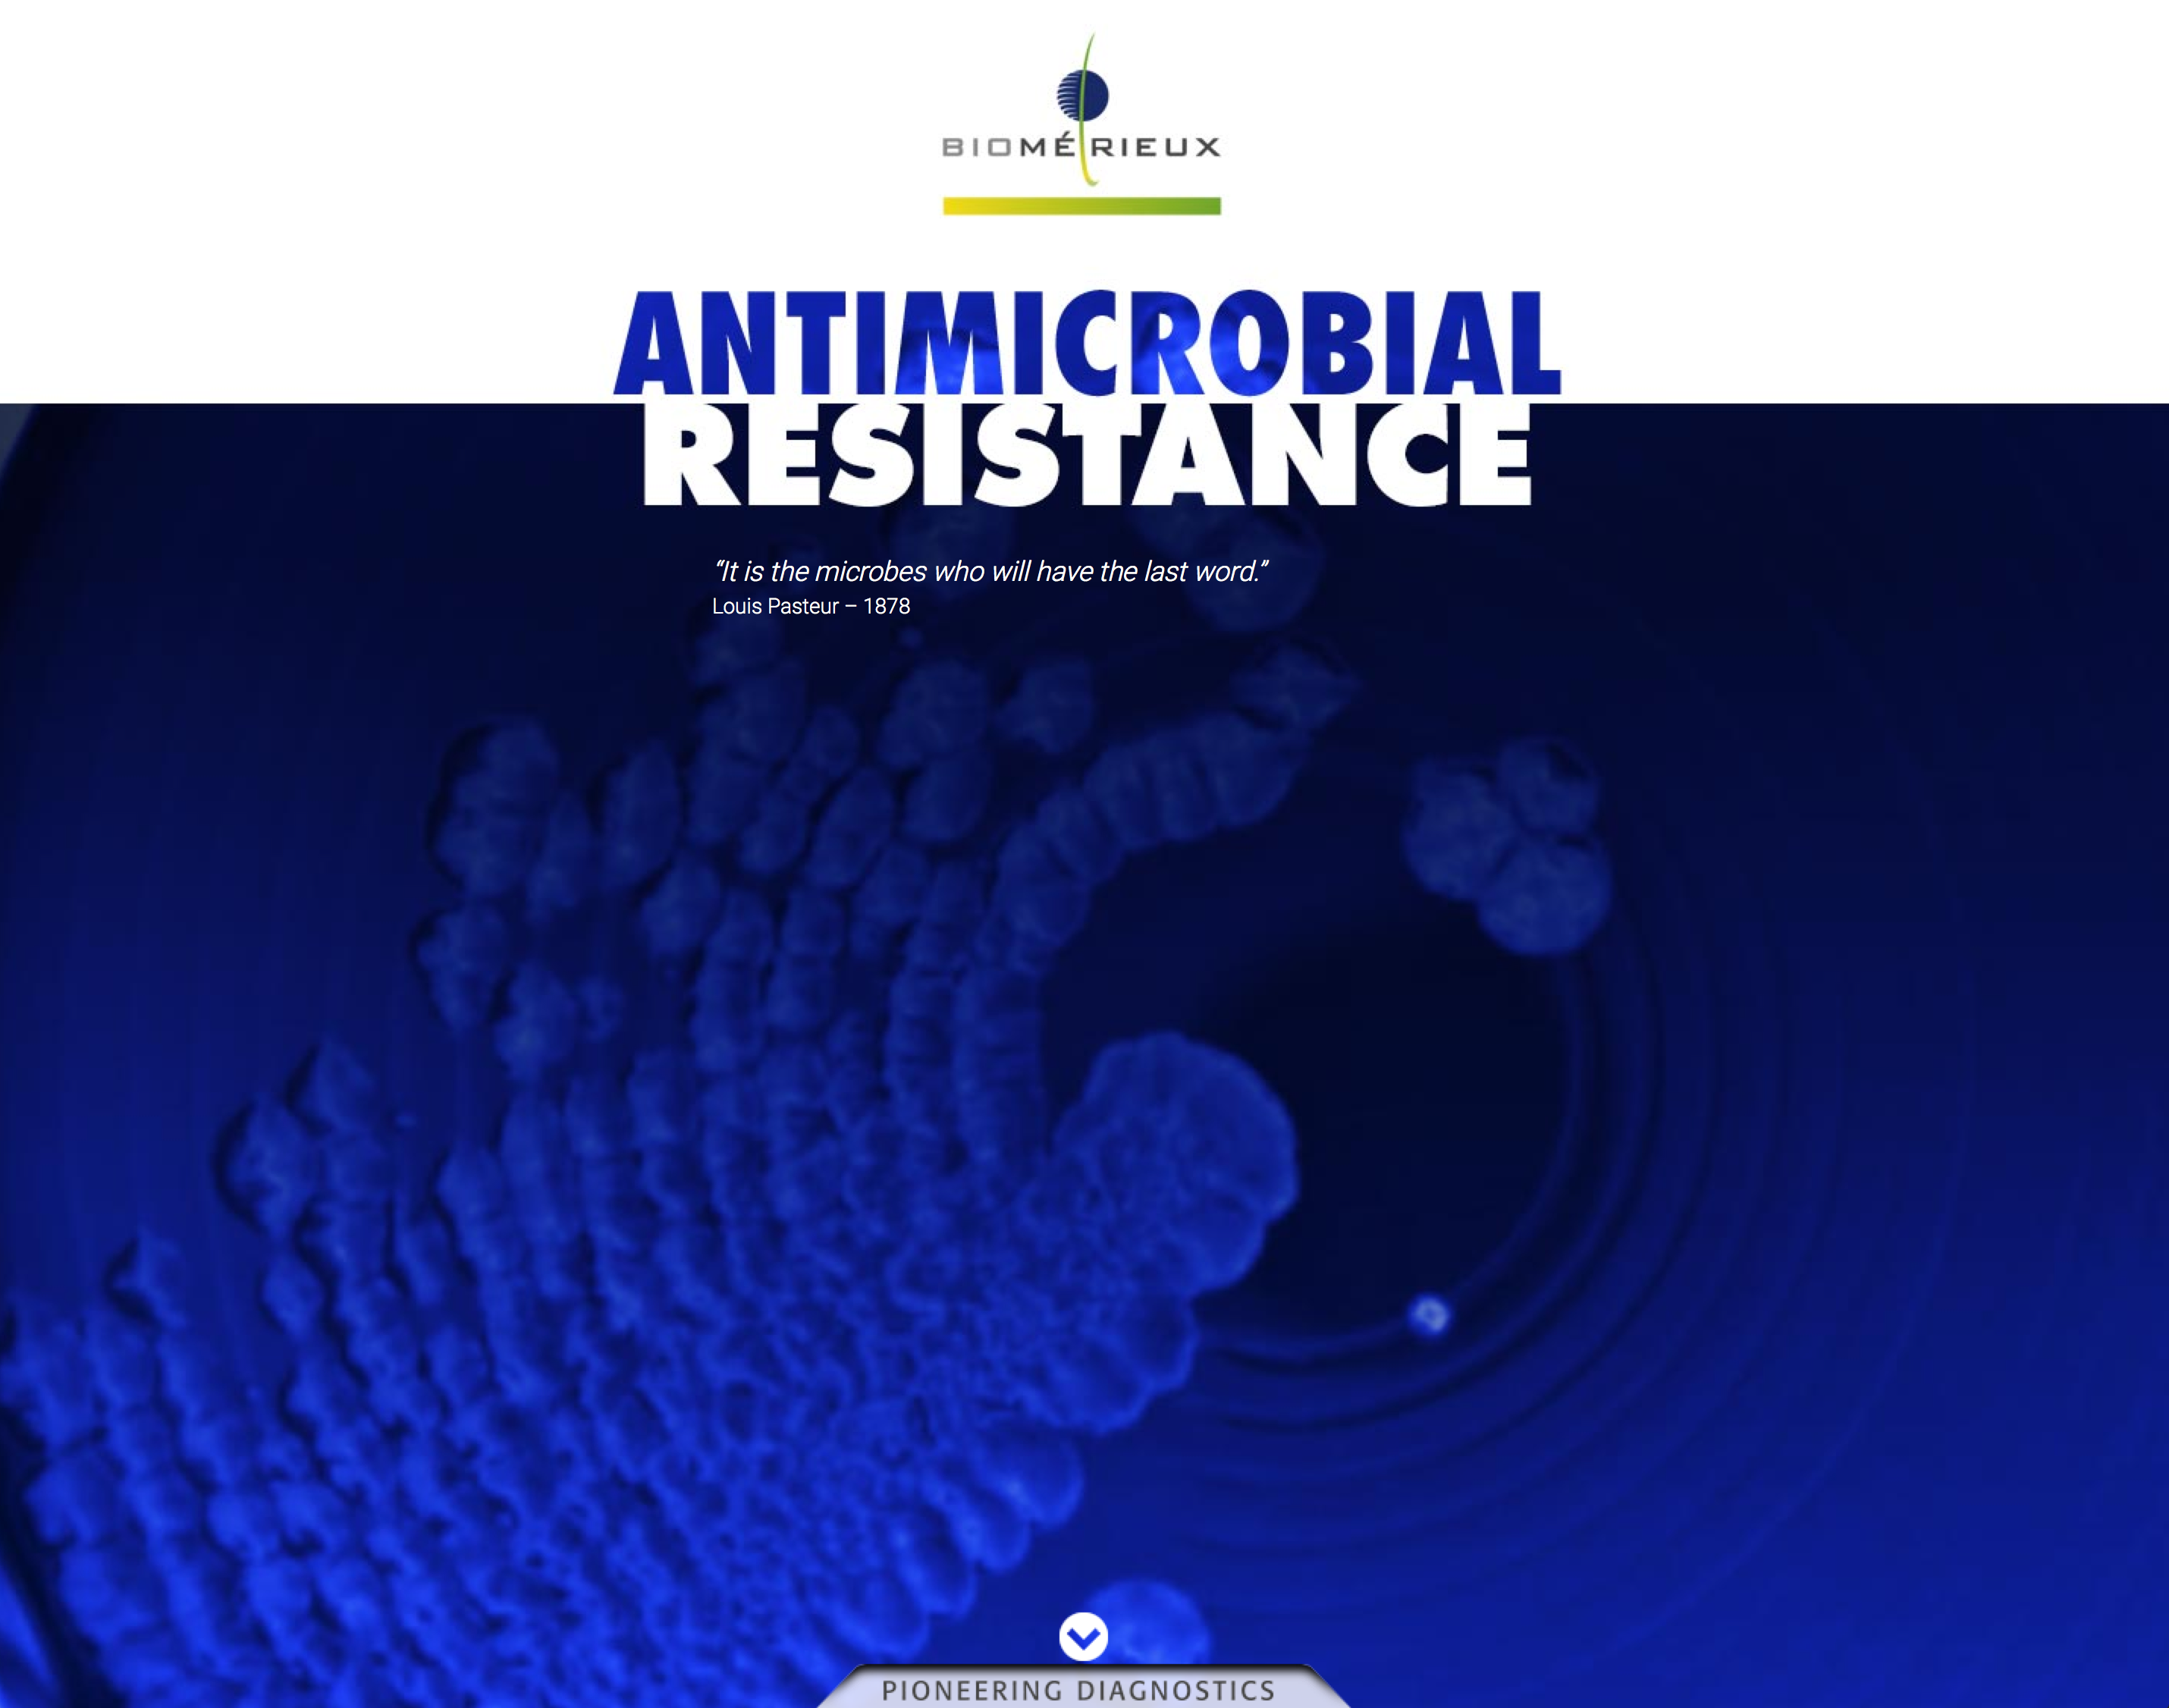 bioMérieux Antimicrobial Resistance website